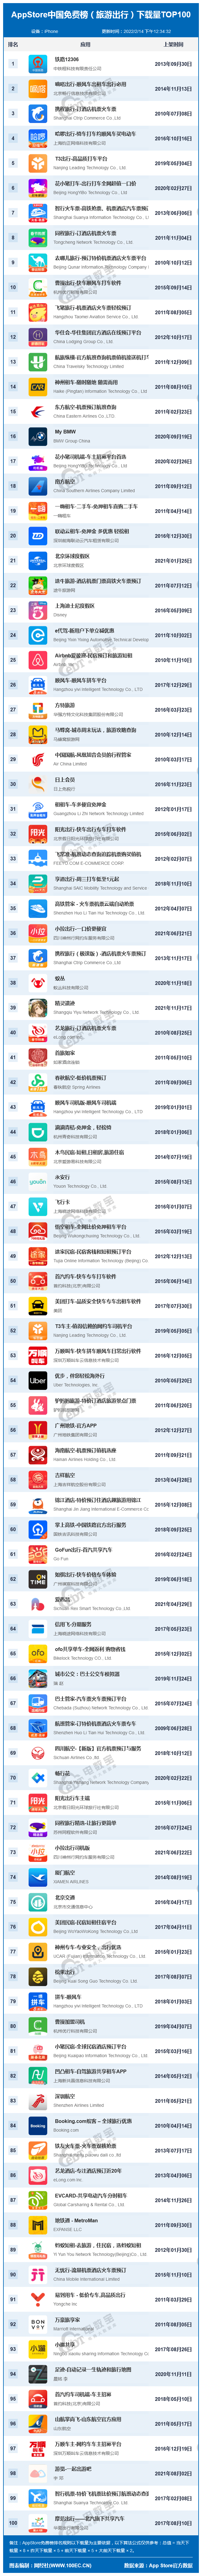 主题库高仿苹果免费版:2月AppStore中国免费榜(旅游出行)TOP100 :嘀嗒出行 携程旅行前三